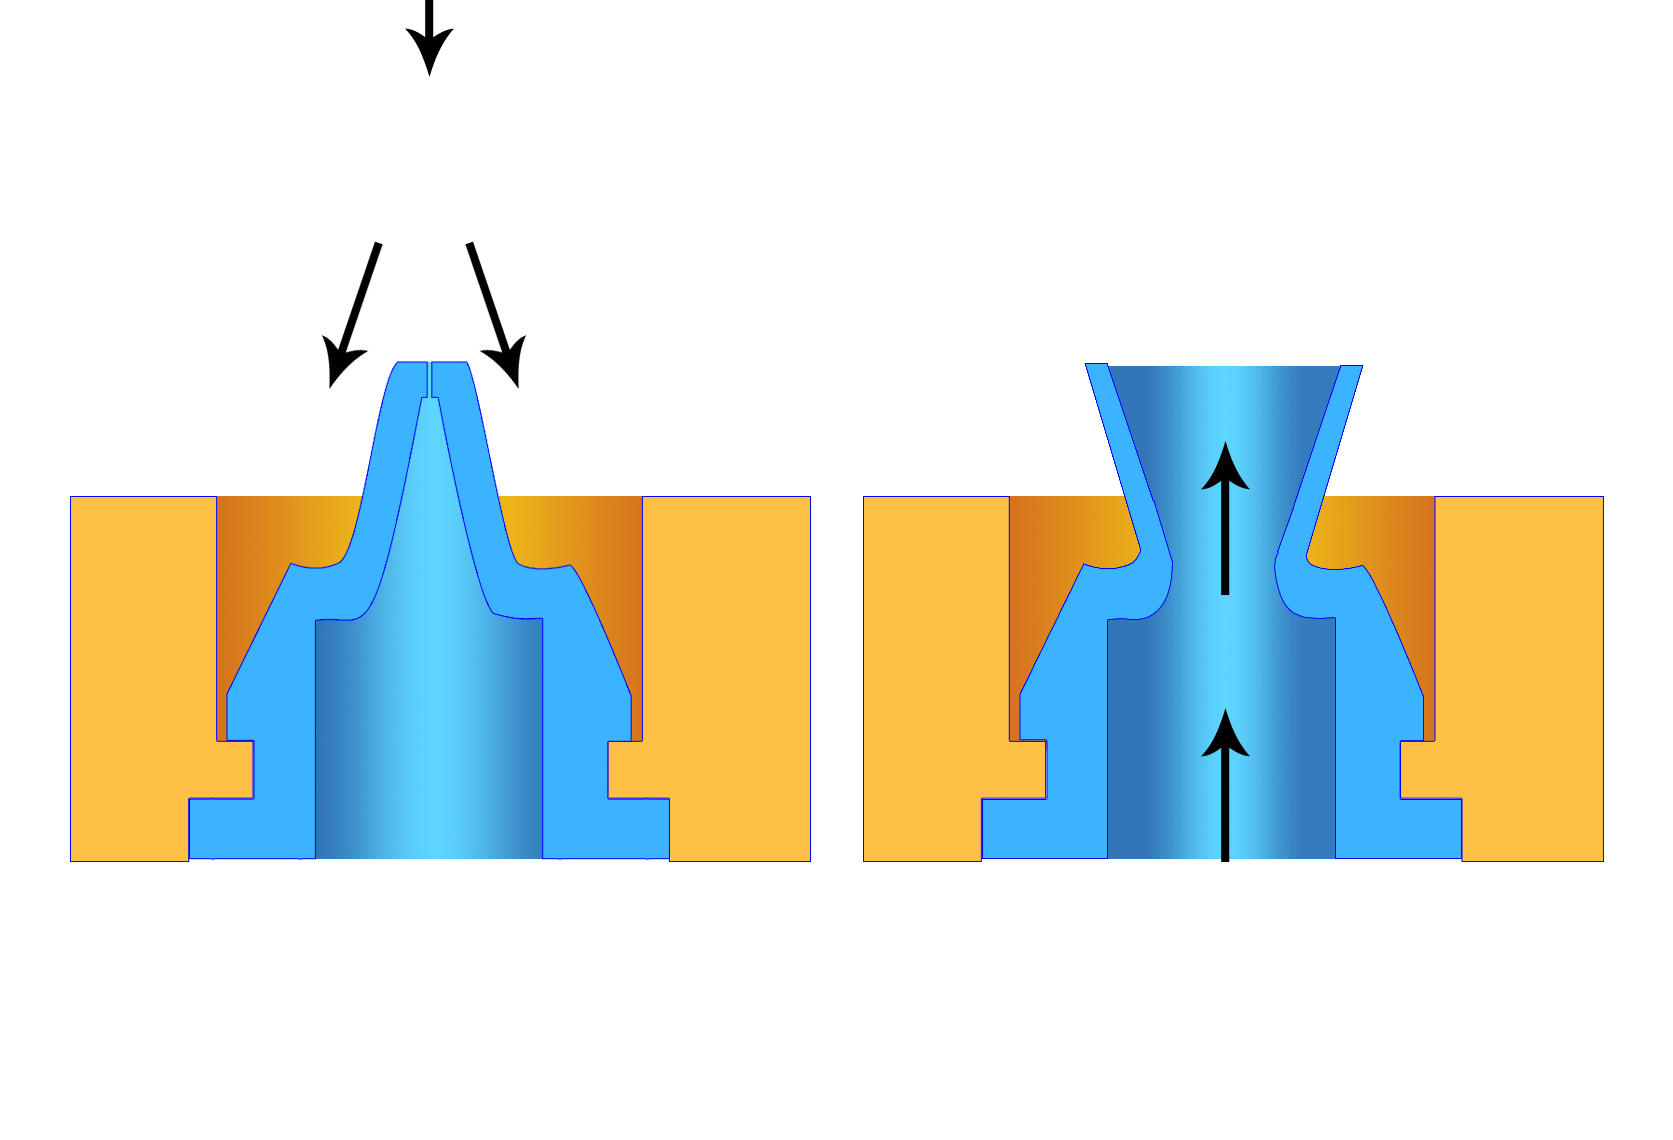 Duckbill valves 